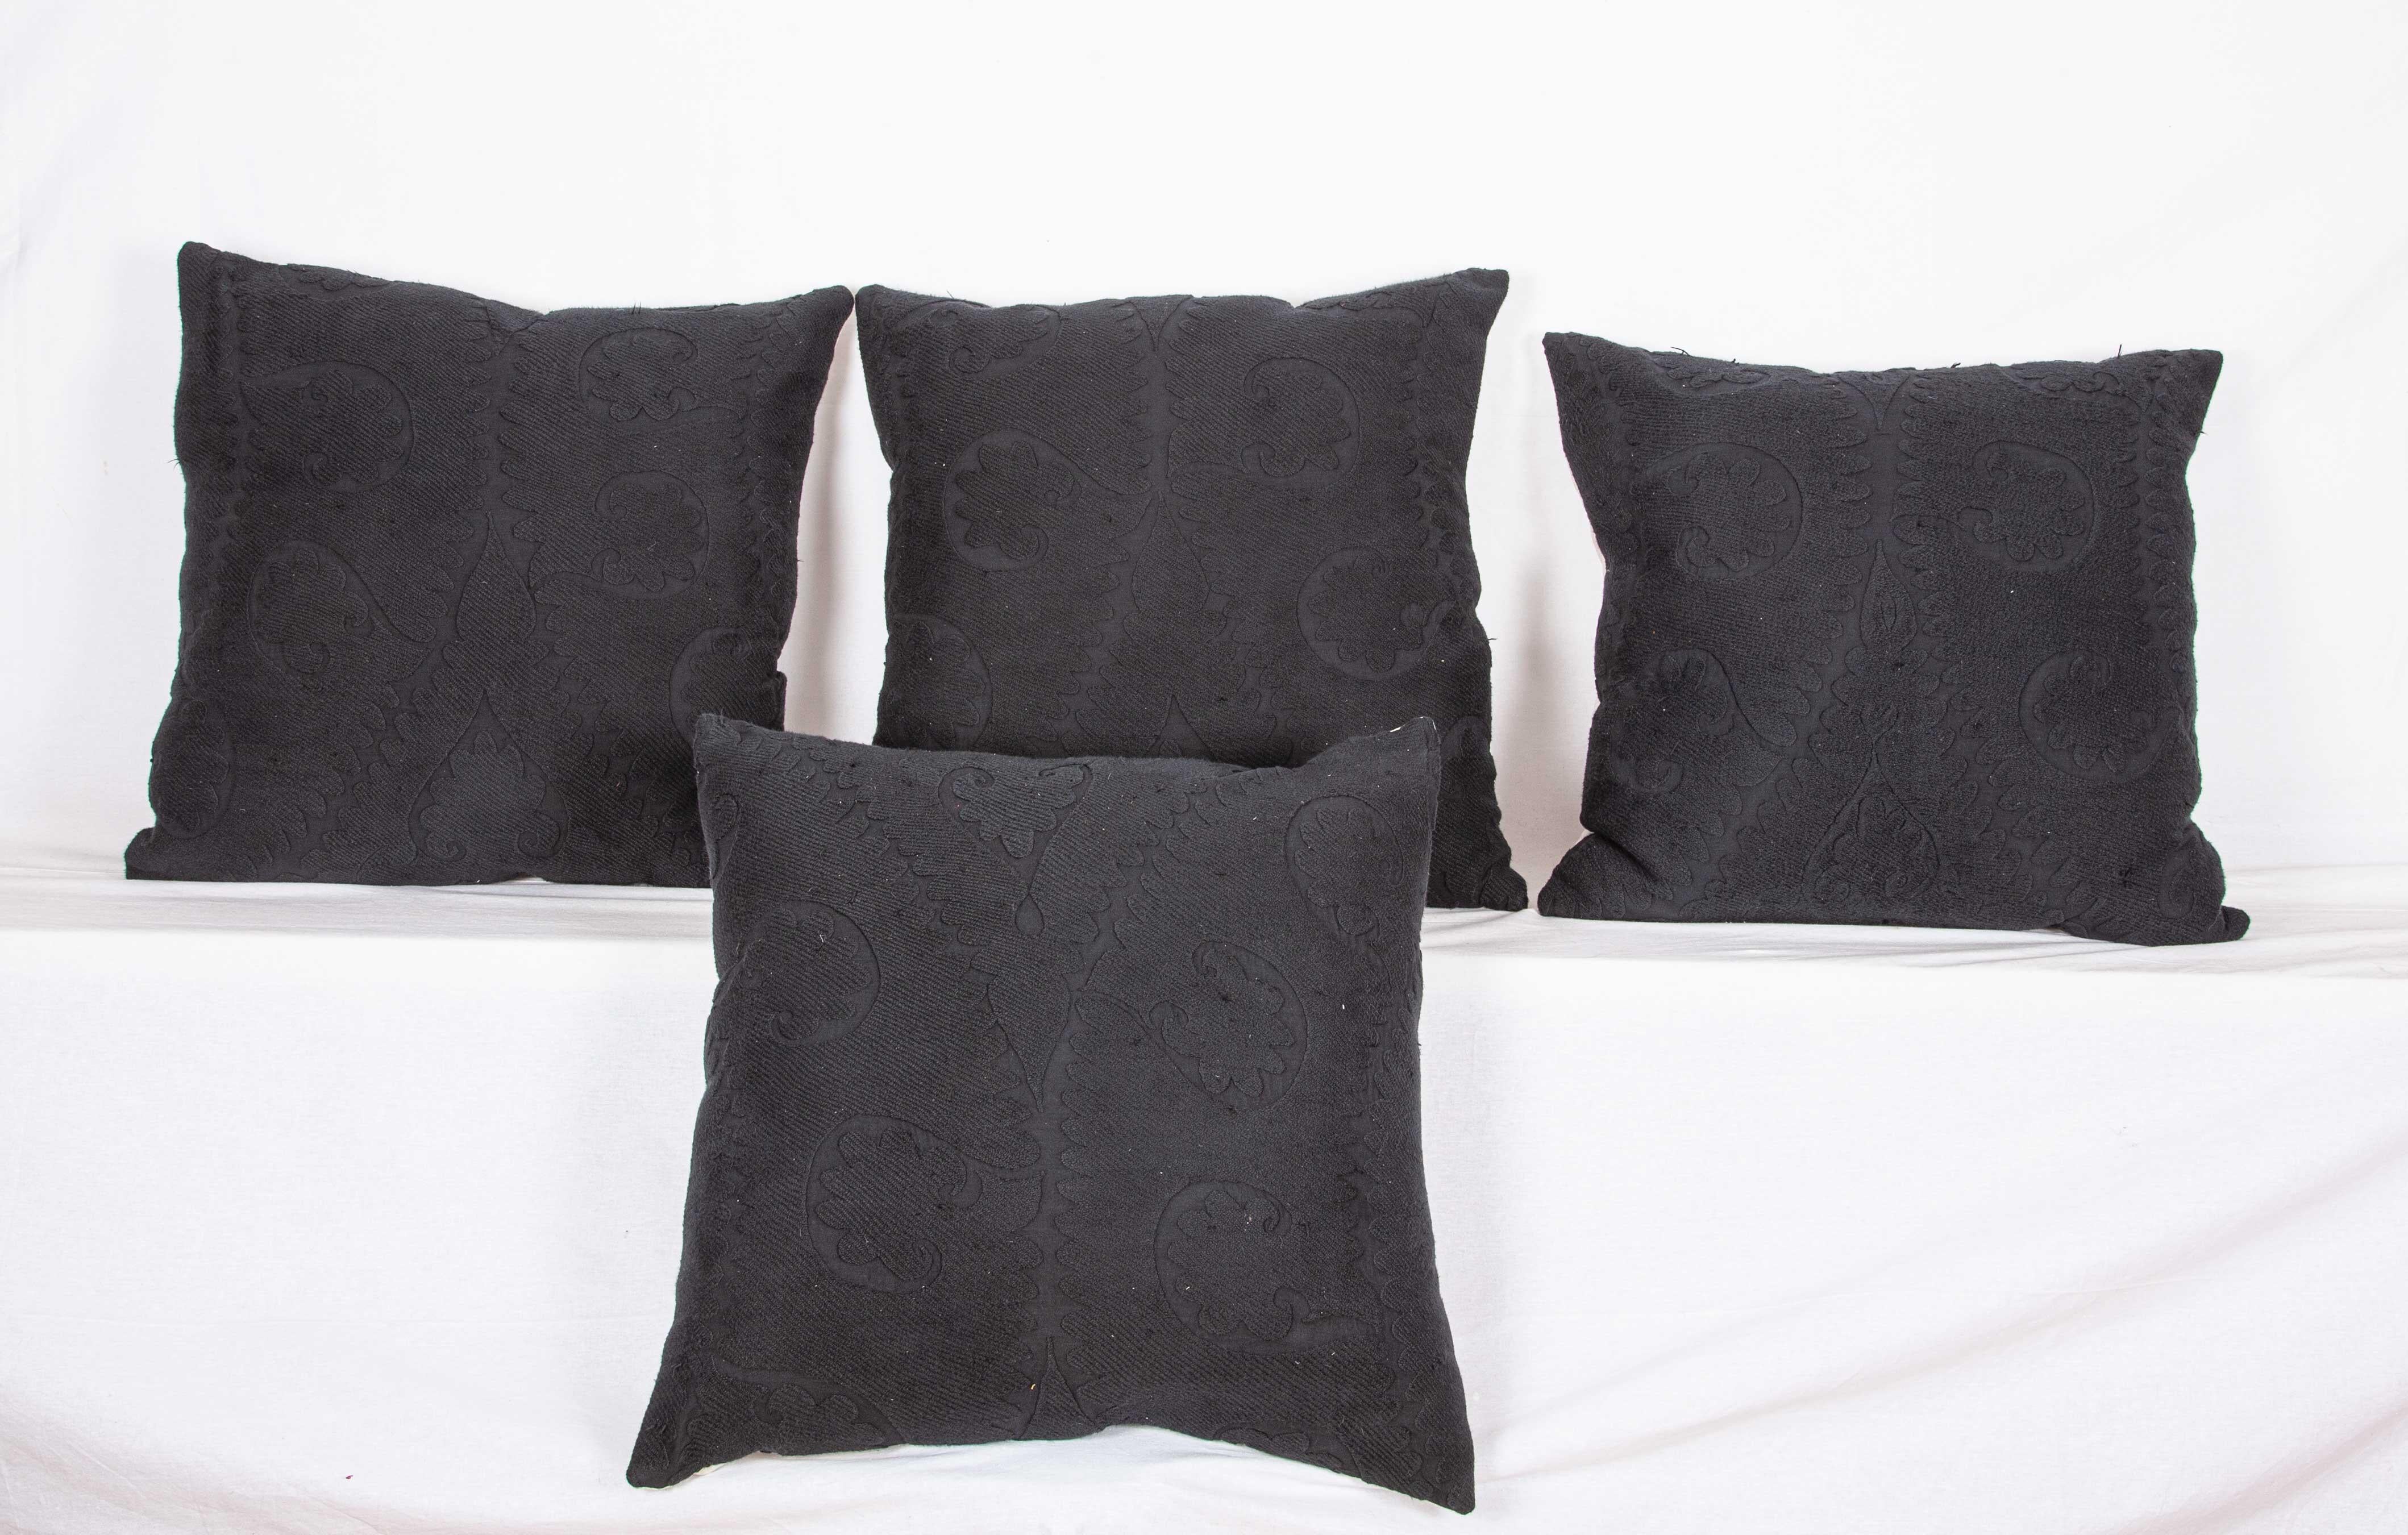 Ces taies d'oreiller Suzani sont fabriquées à partir de Suzanis vintage surteintées. Le résultat est là, un look minimaliste avec un peu de texture.
Lin à l'arrière
fermeture éclair
Le nettoyage à sec est recommandé

Mesures : 60 x 60 cm /